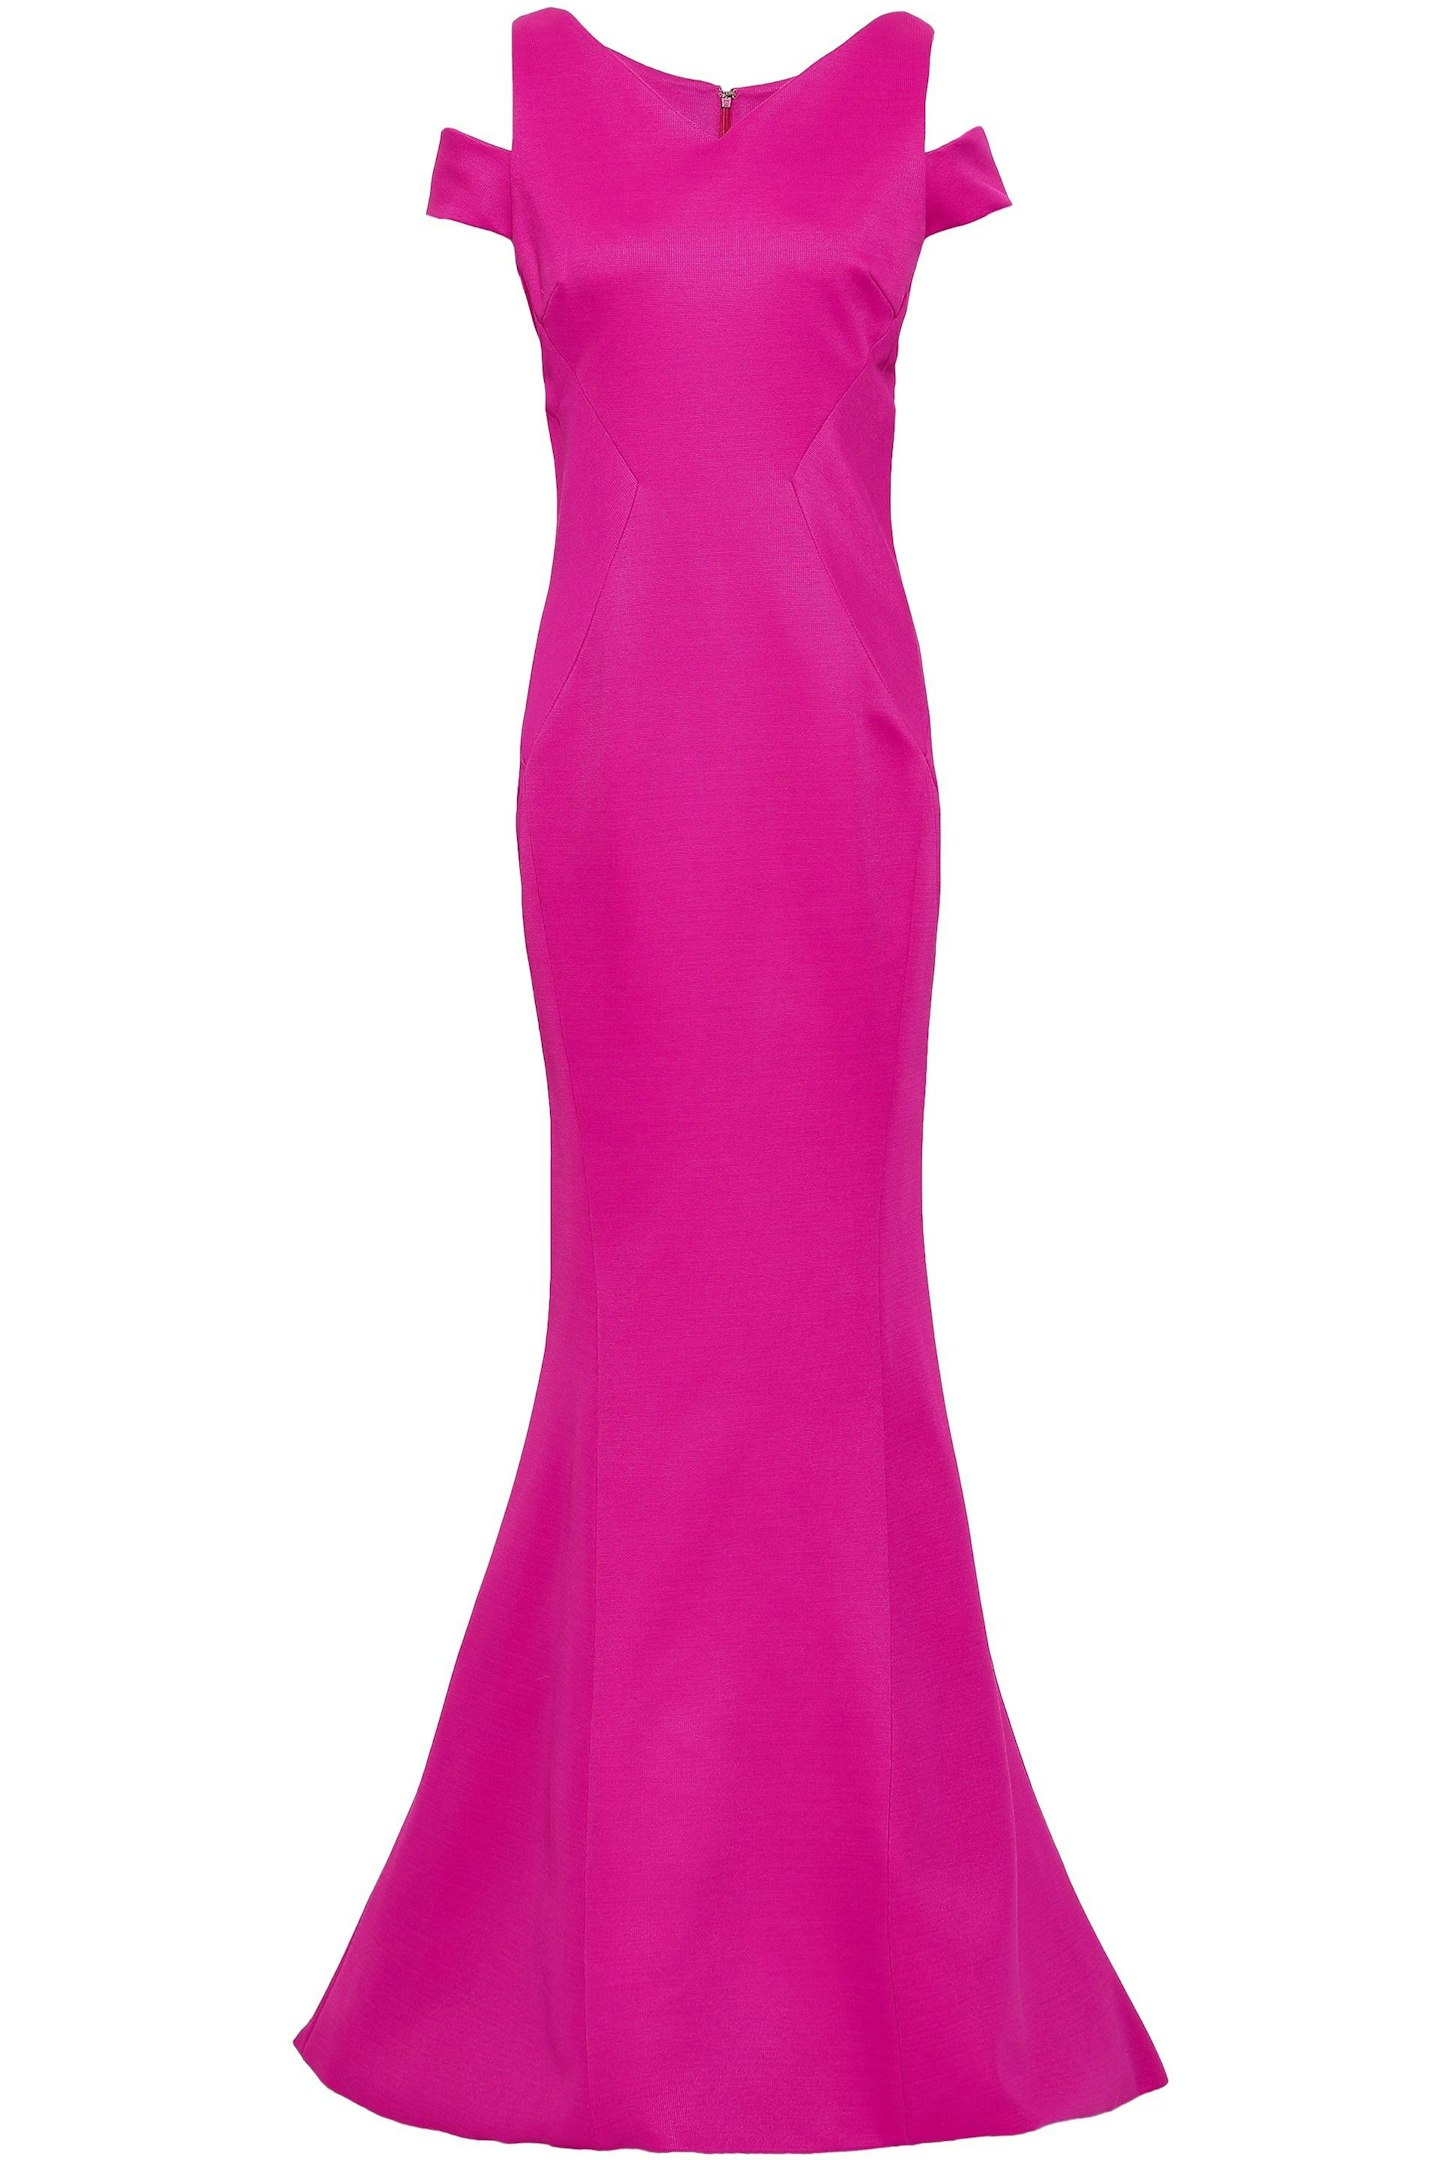 Zac Posen, Fuchsia Long Dress, £1,145